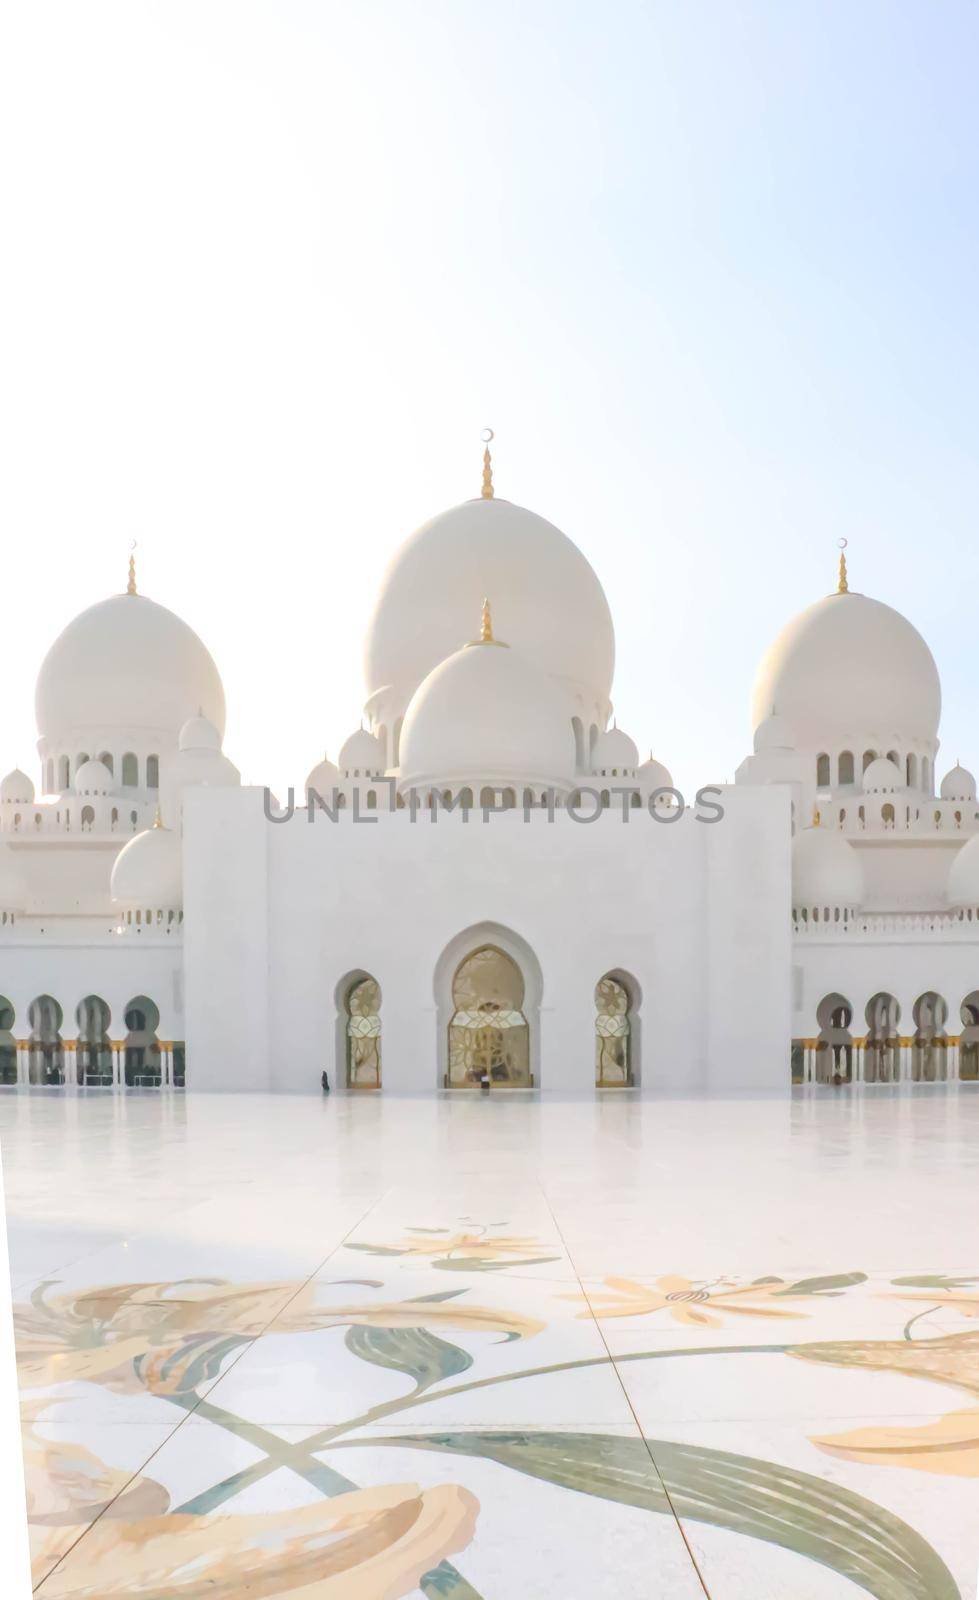 Arabic Sheikh zayed mosque on white background. United arab emirates, middle east. Famous landmark.